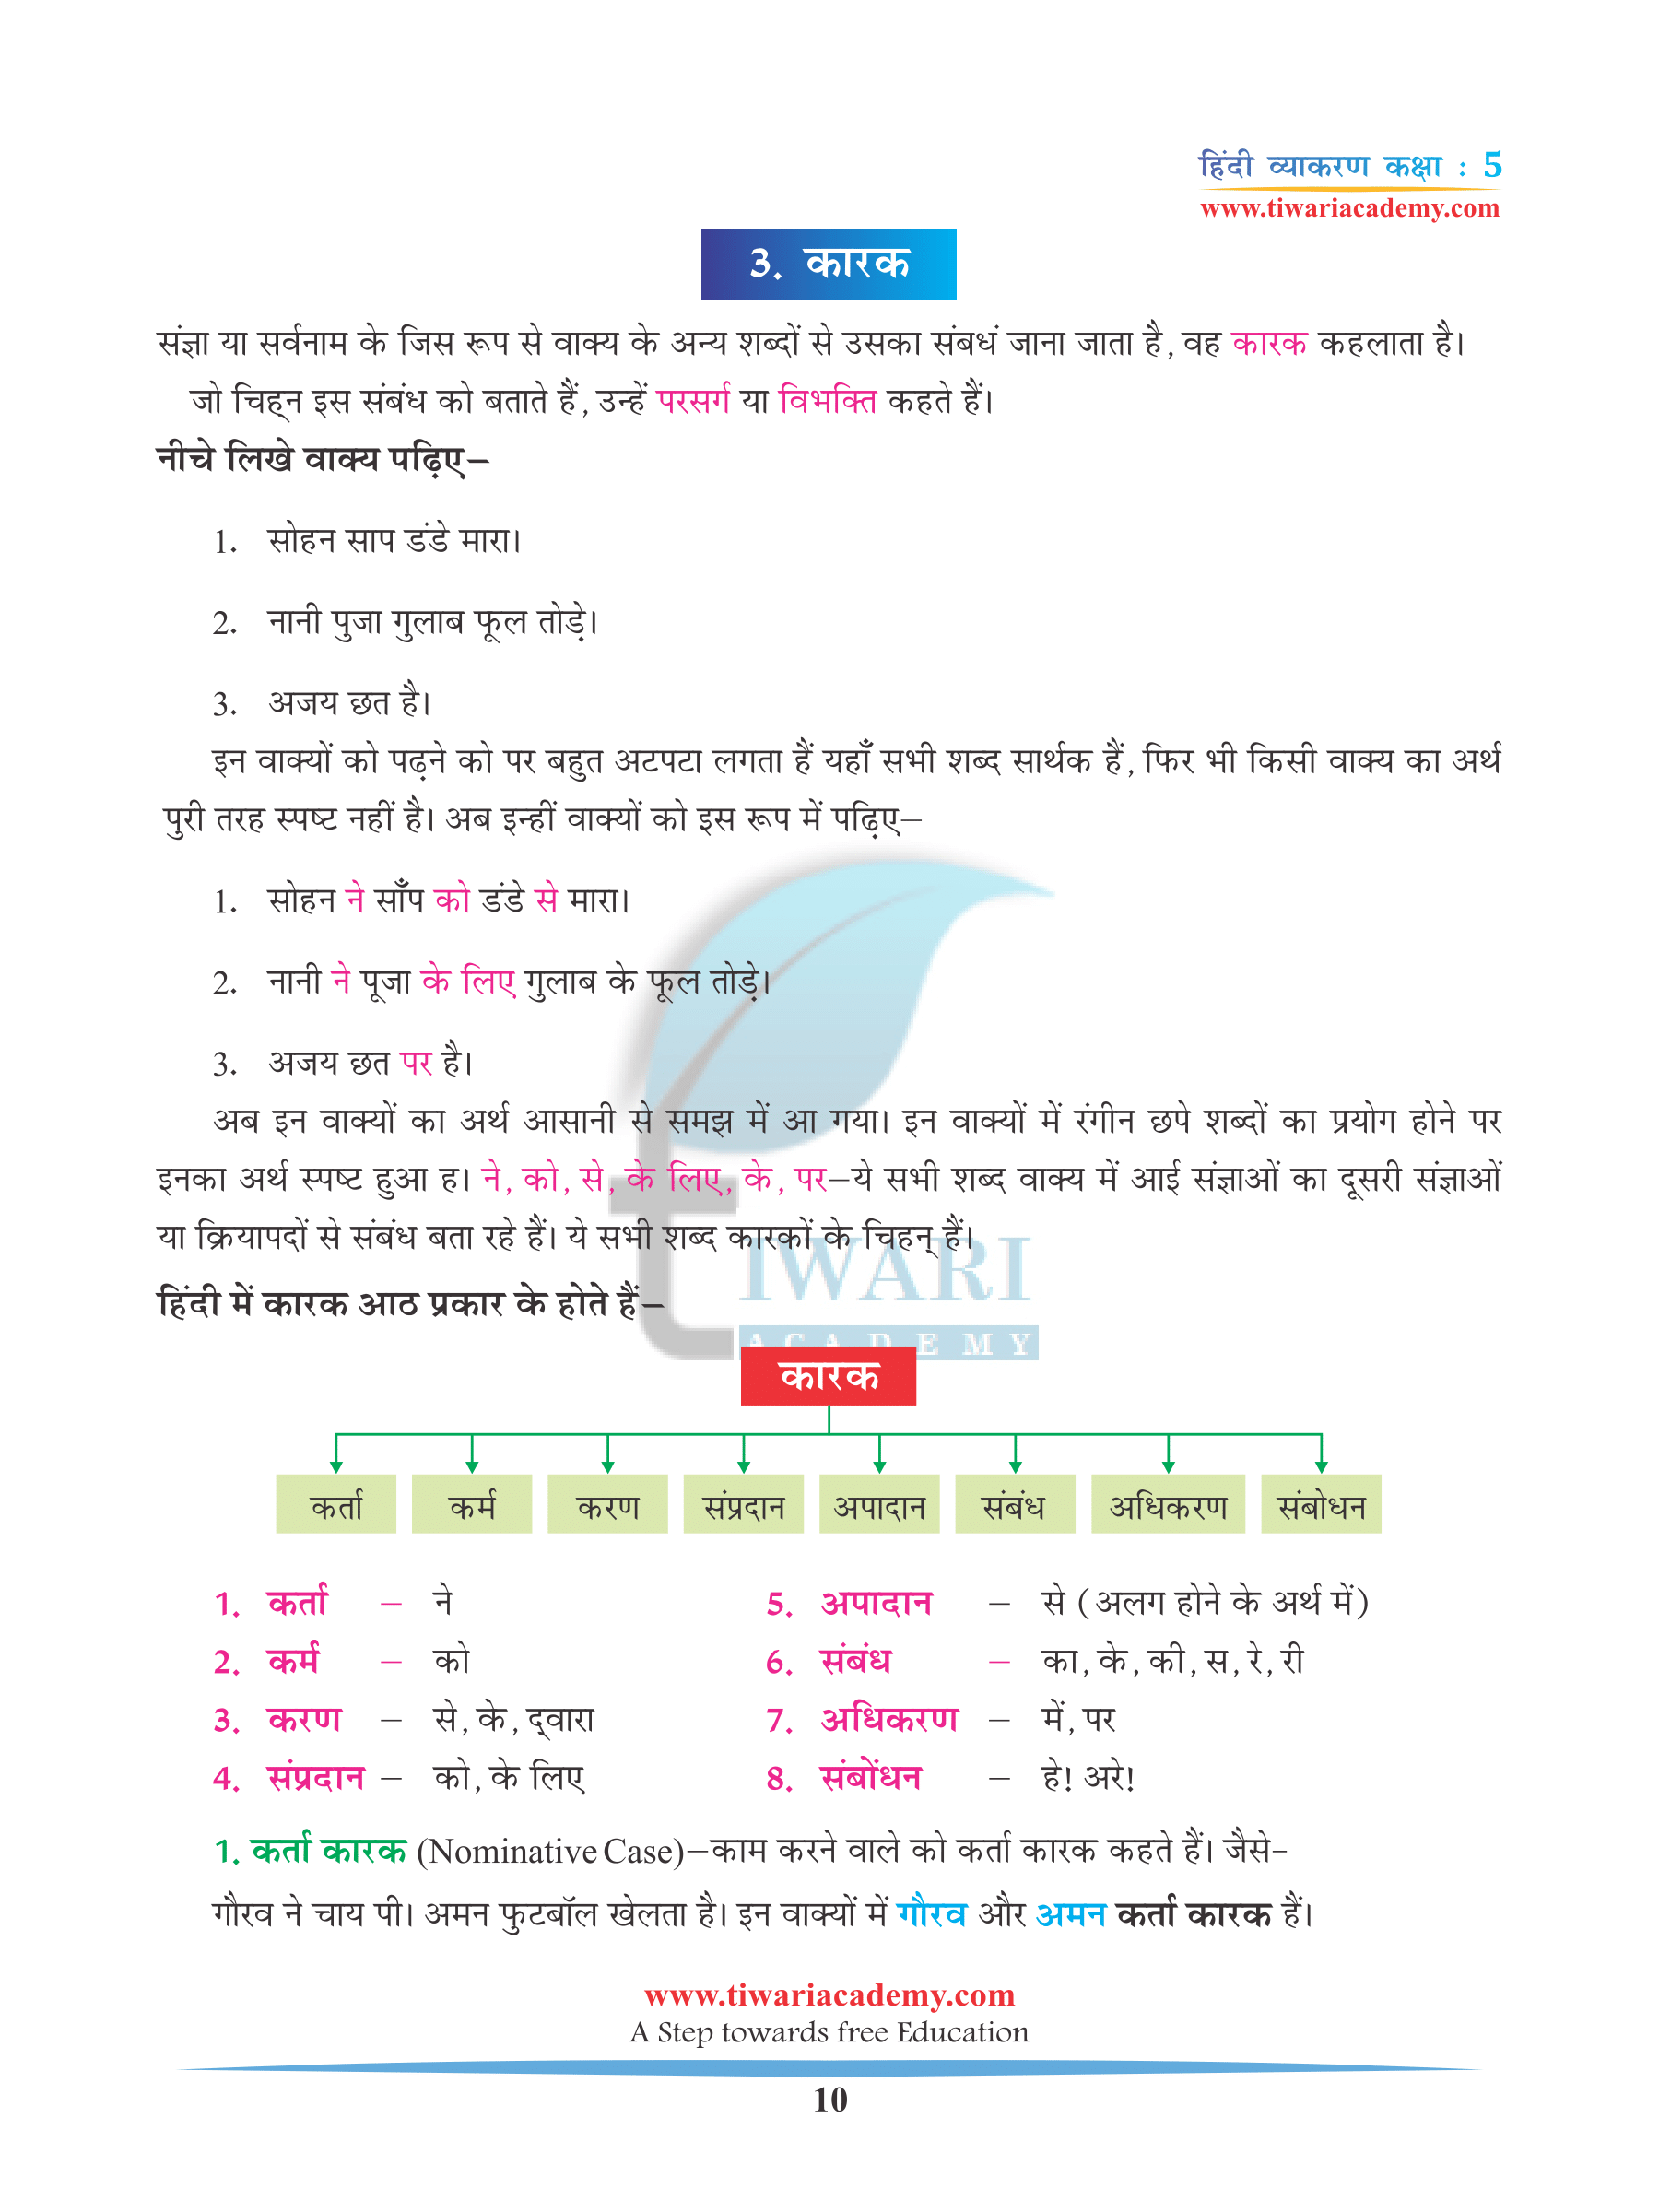 Class 5 Hindi Grammar Chapter 4 Ling, Vachan aur Kaarak for 2022-2023